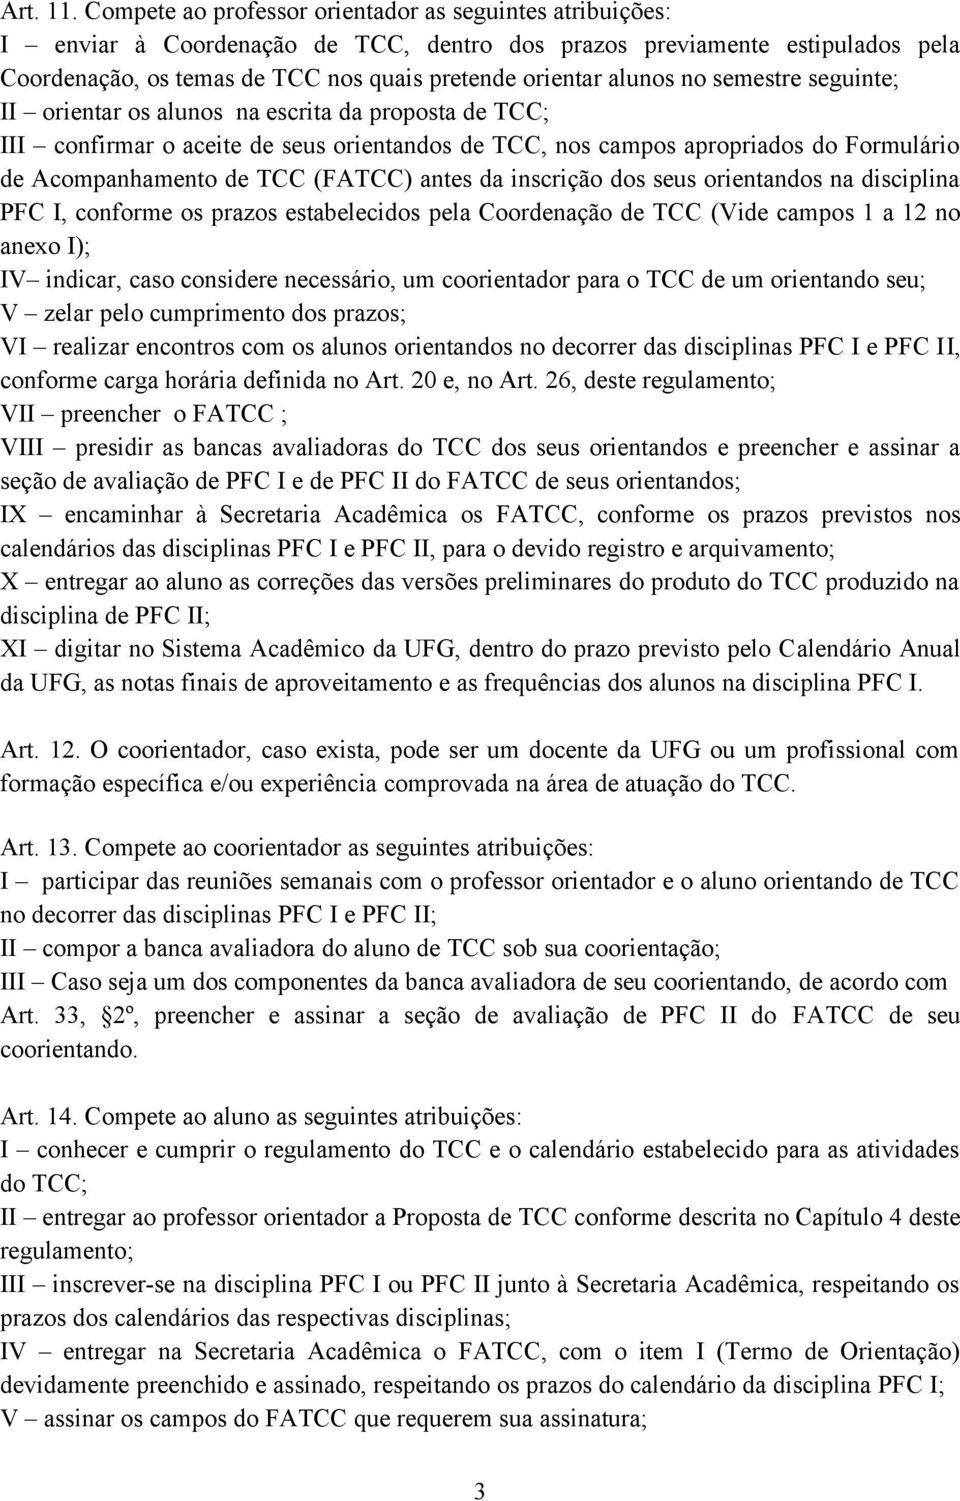 no semestre seguinte; II orientar os alunos na escrita da proposta de TCC; III confirmar o aceite de seus orientandos de TCC, nos campos apropriados do Formulário de Acompanhamento de TCC (FATCC)